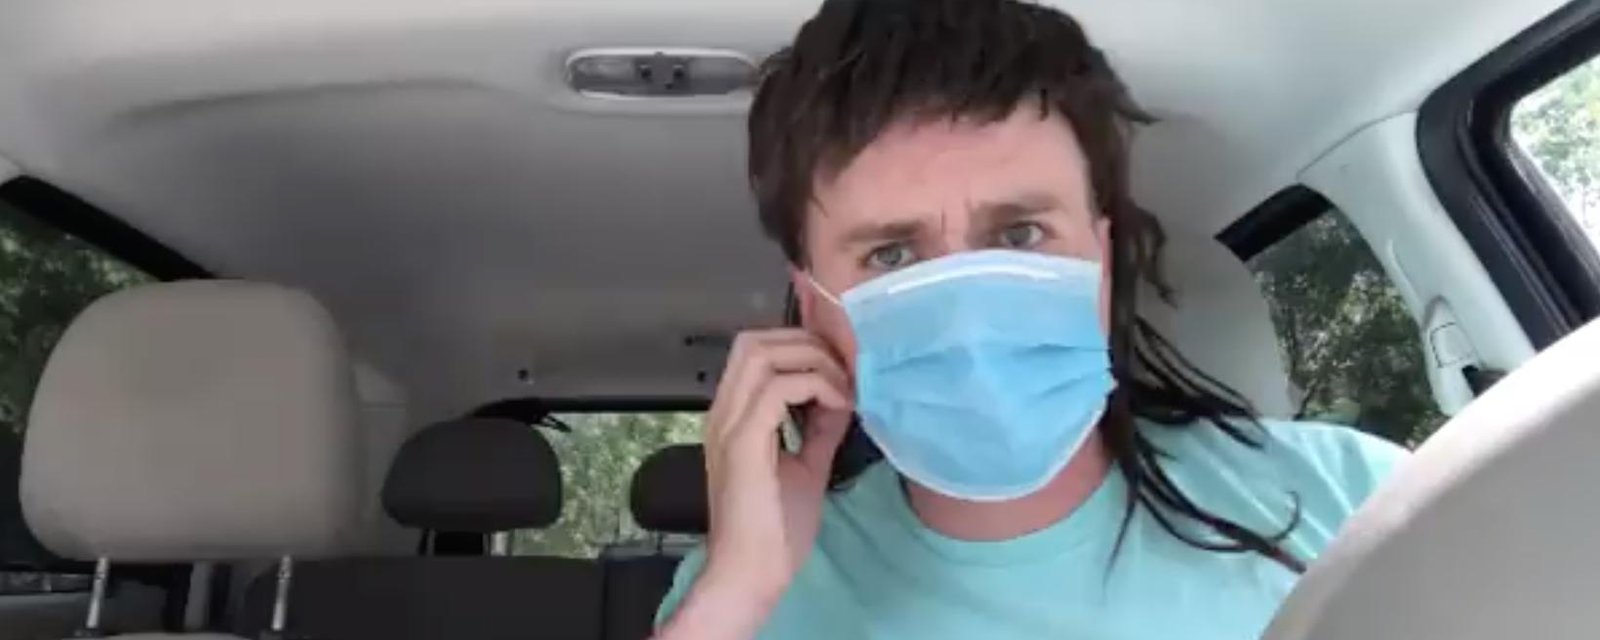 Arnaud Soly publie une vidéo sur le port du masque qui devient complètement virale